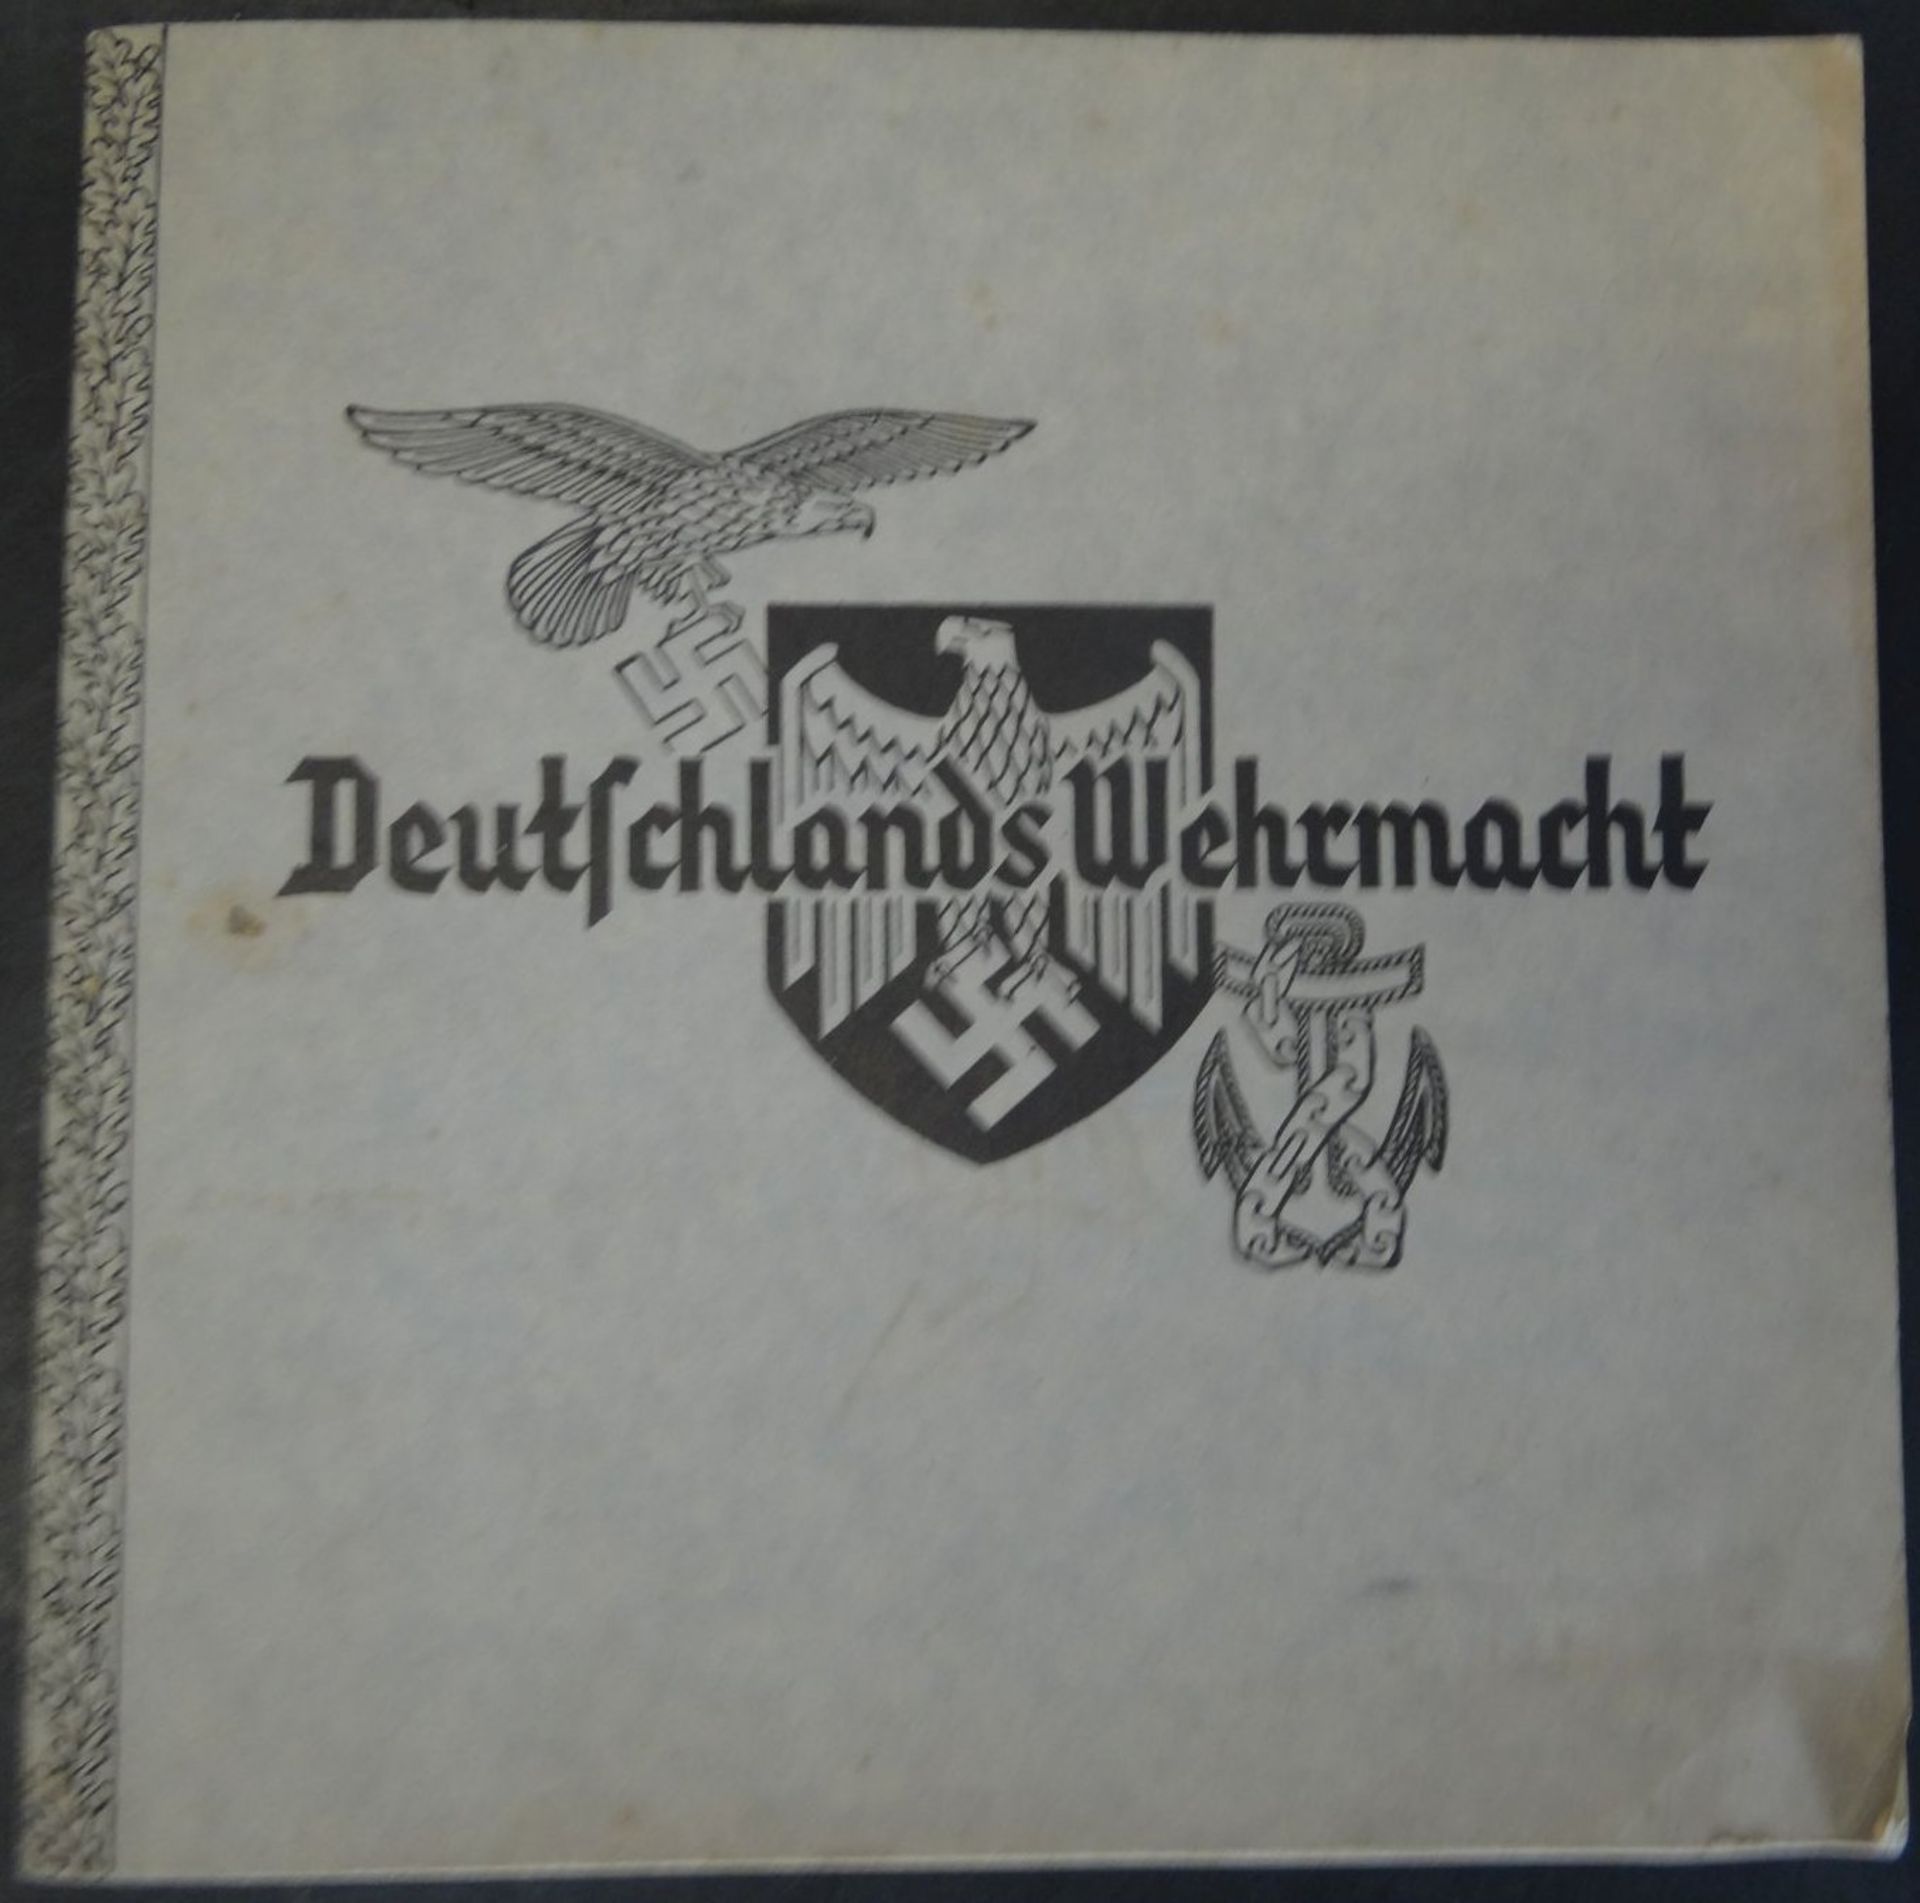 Sammelalbum "Deutschlands Wehrmacht" 1938, komplett